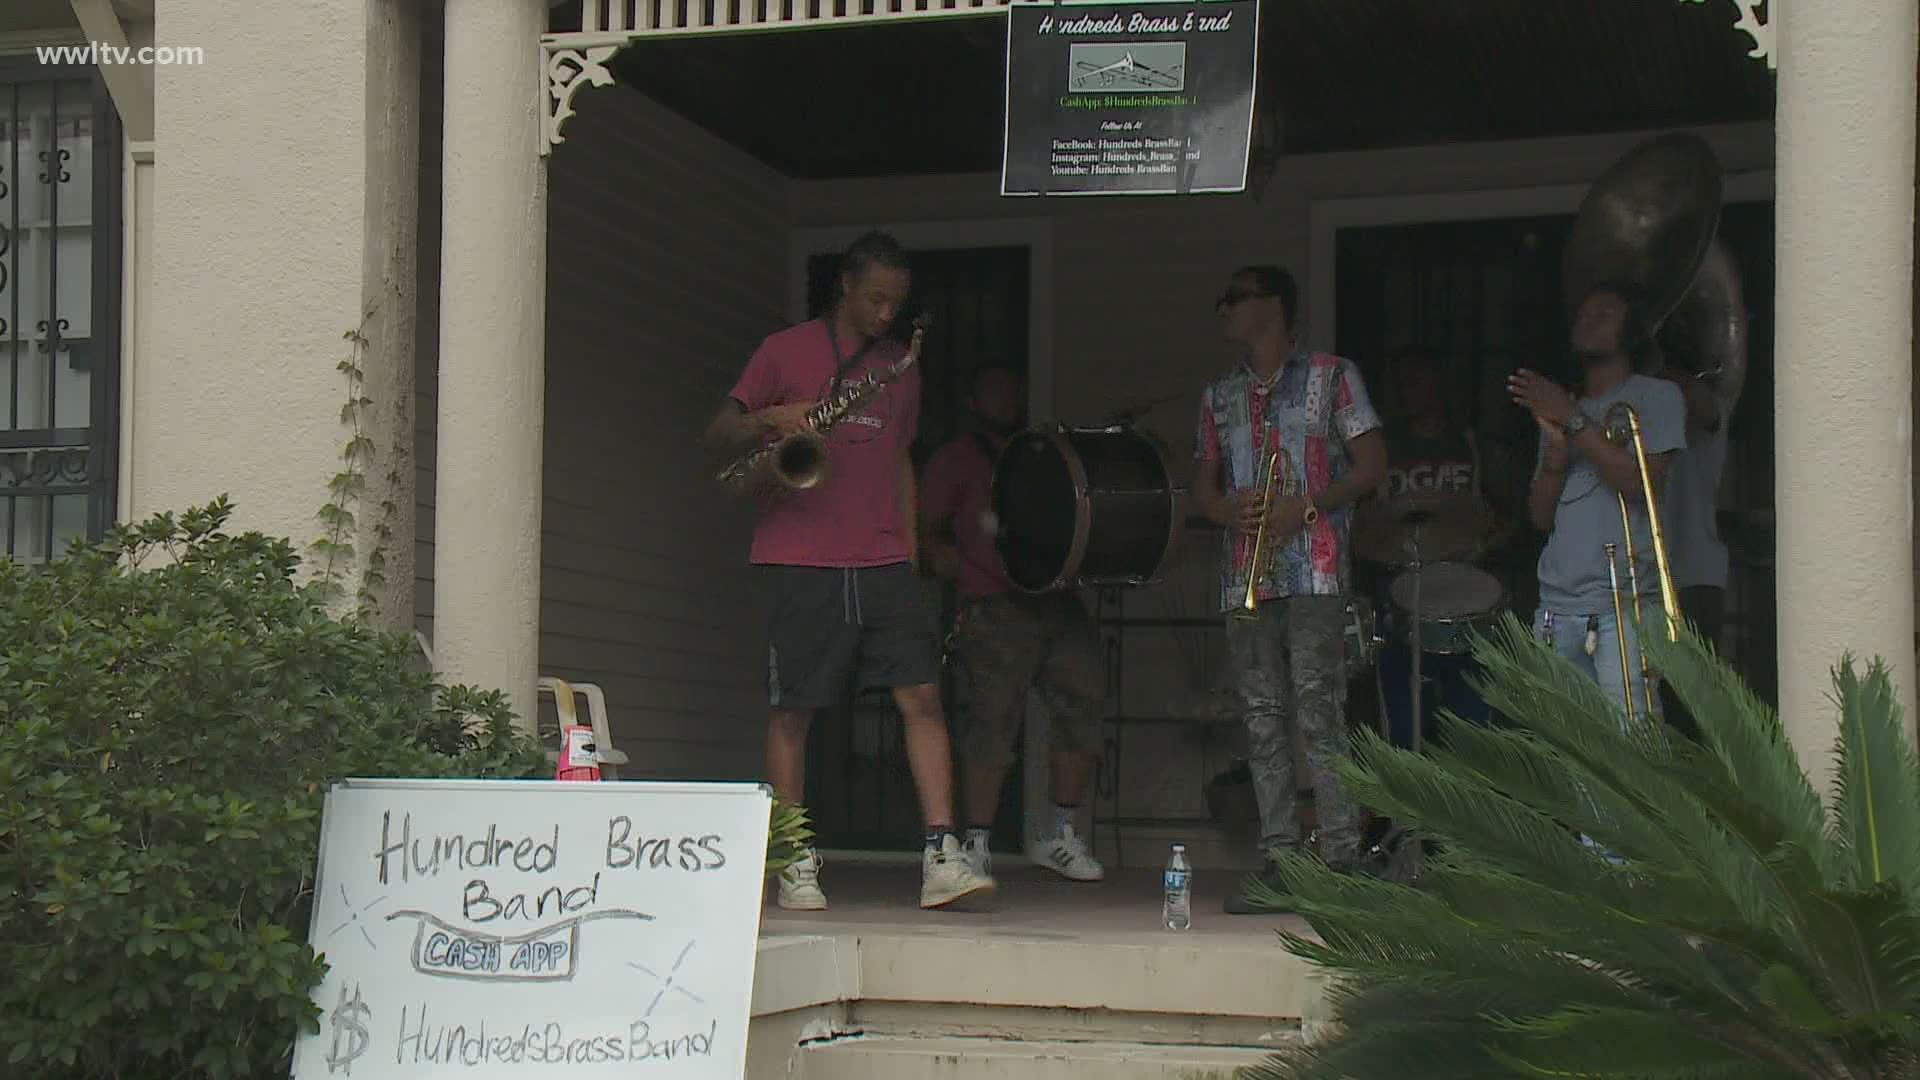 Hundreds Brass Band plays on, hosting porch concerts celebrating jazz